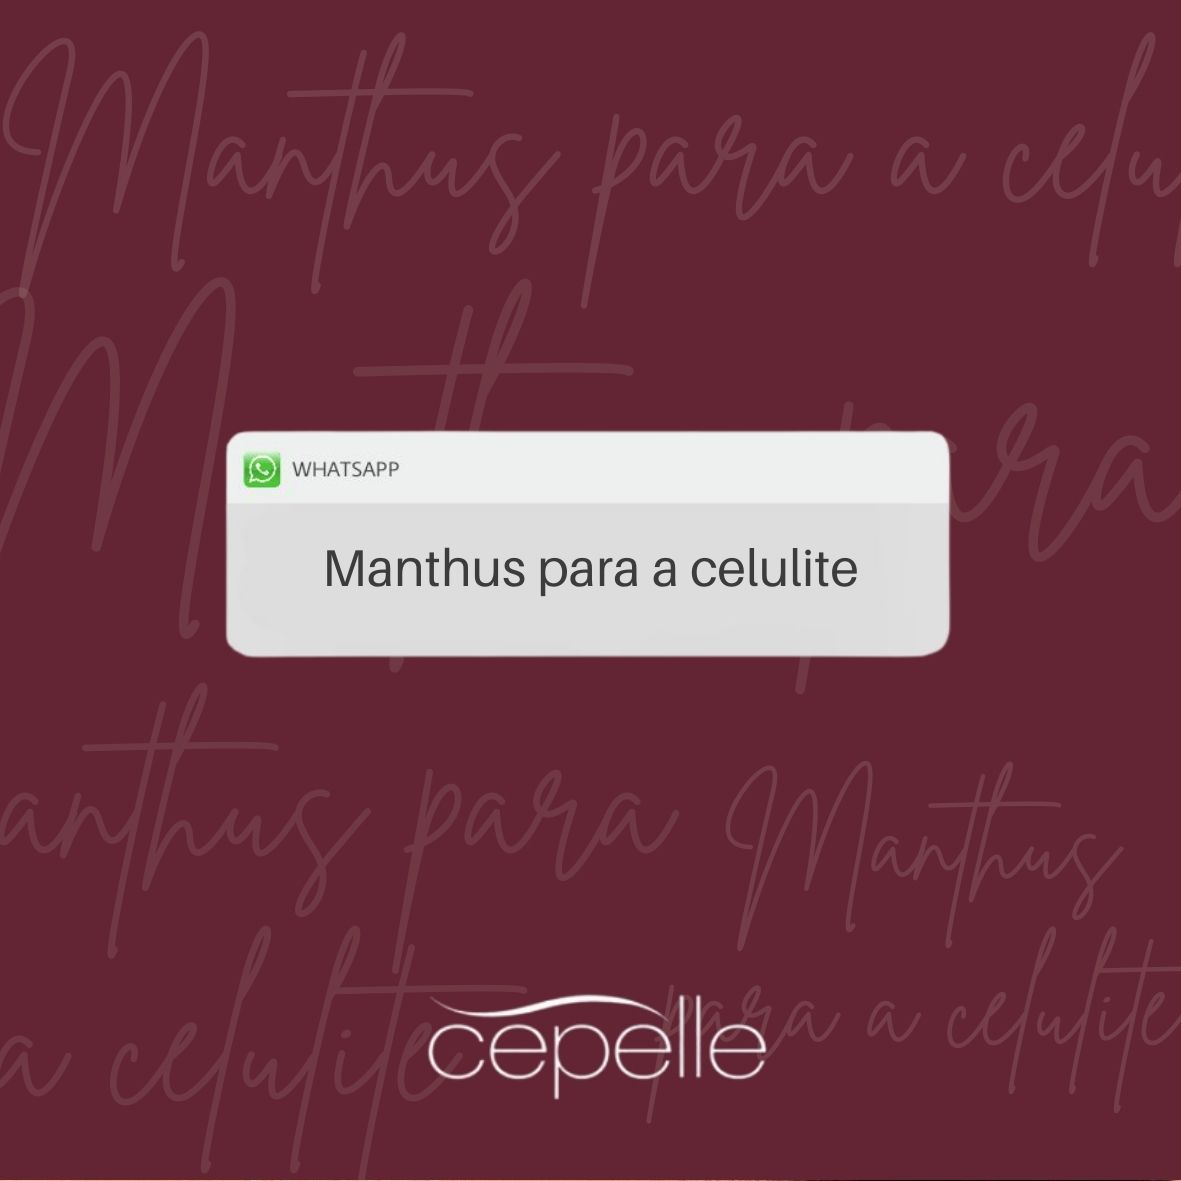 Manthus-para-a-celulite.jpg